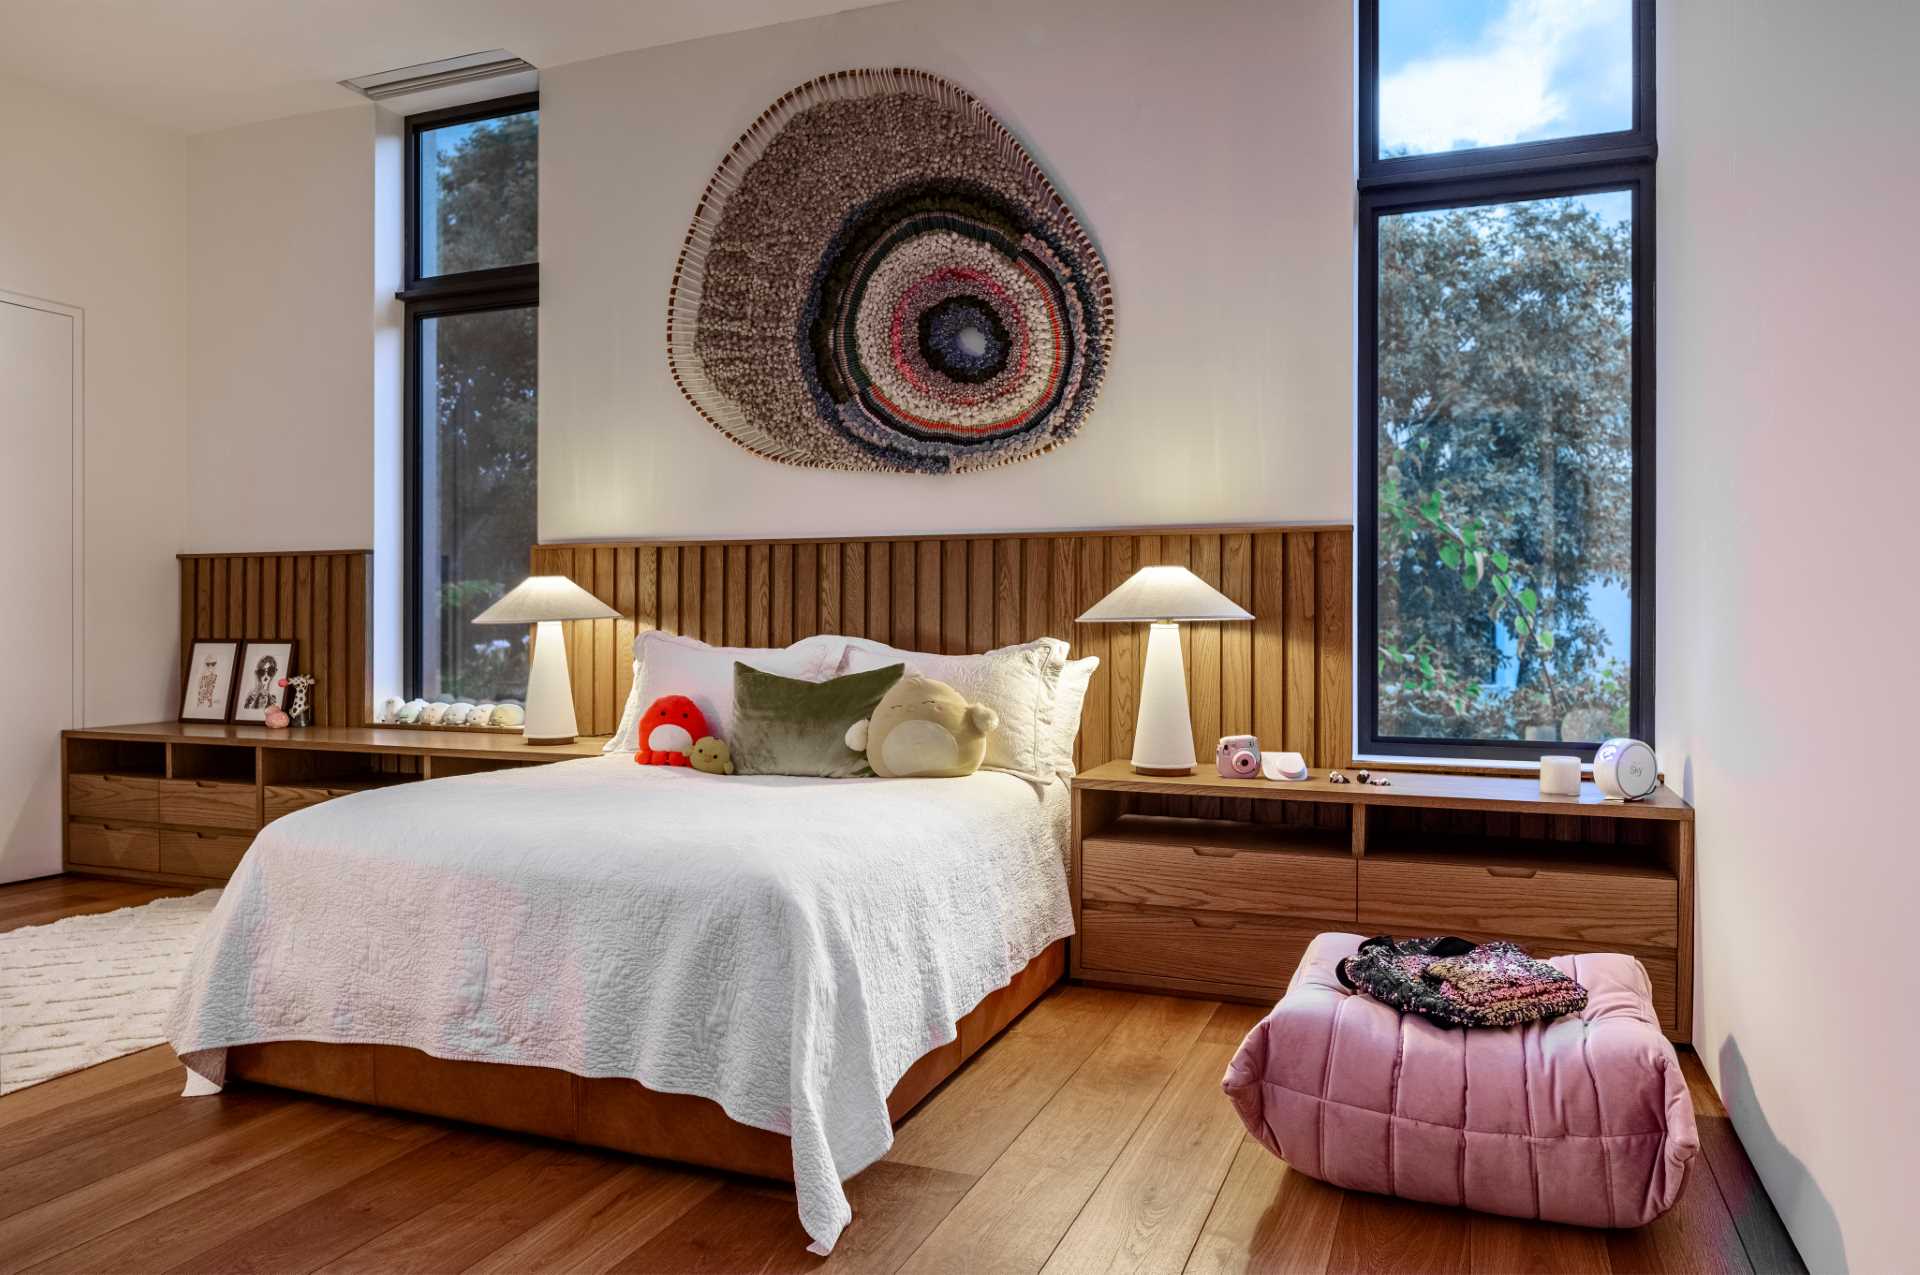 این اتاق خواب مدرن با یک پوف توگو از میشل دوکاروی و یک اثر هنری بافته شده از تامی کانات مبله شده است.